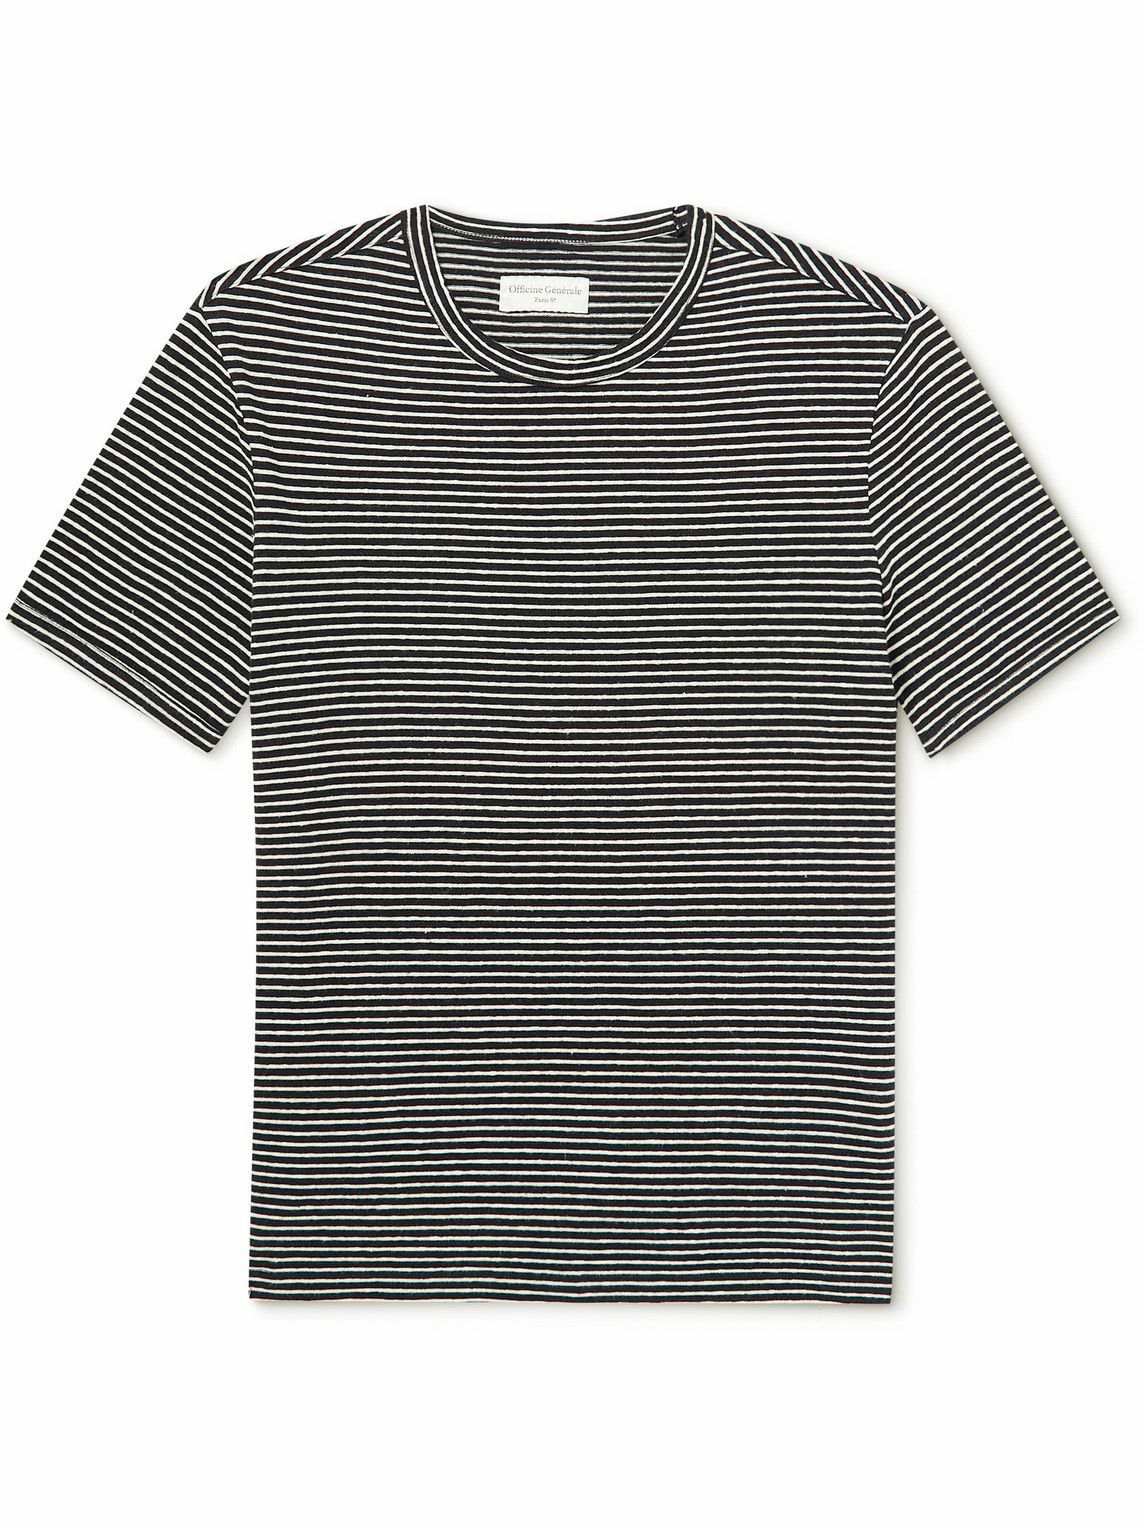 Officine Générale - Striped Cotton and Linen-Blend T-Shirt - Black ...